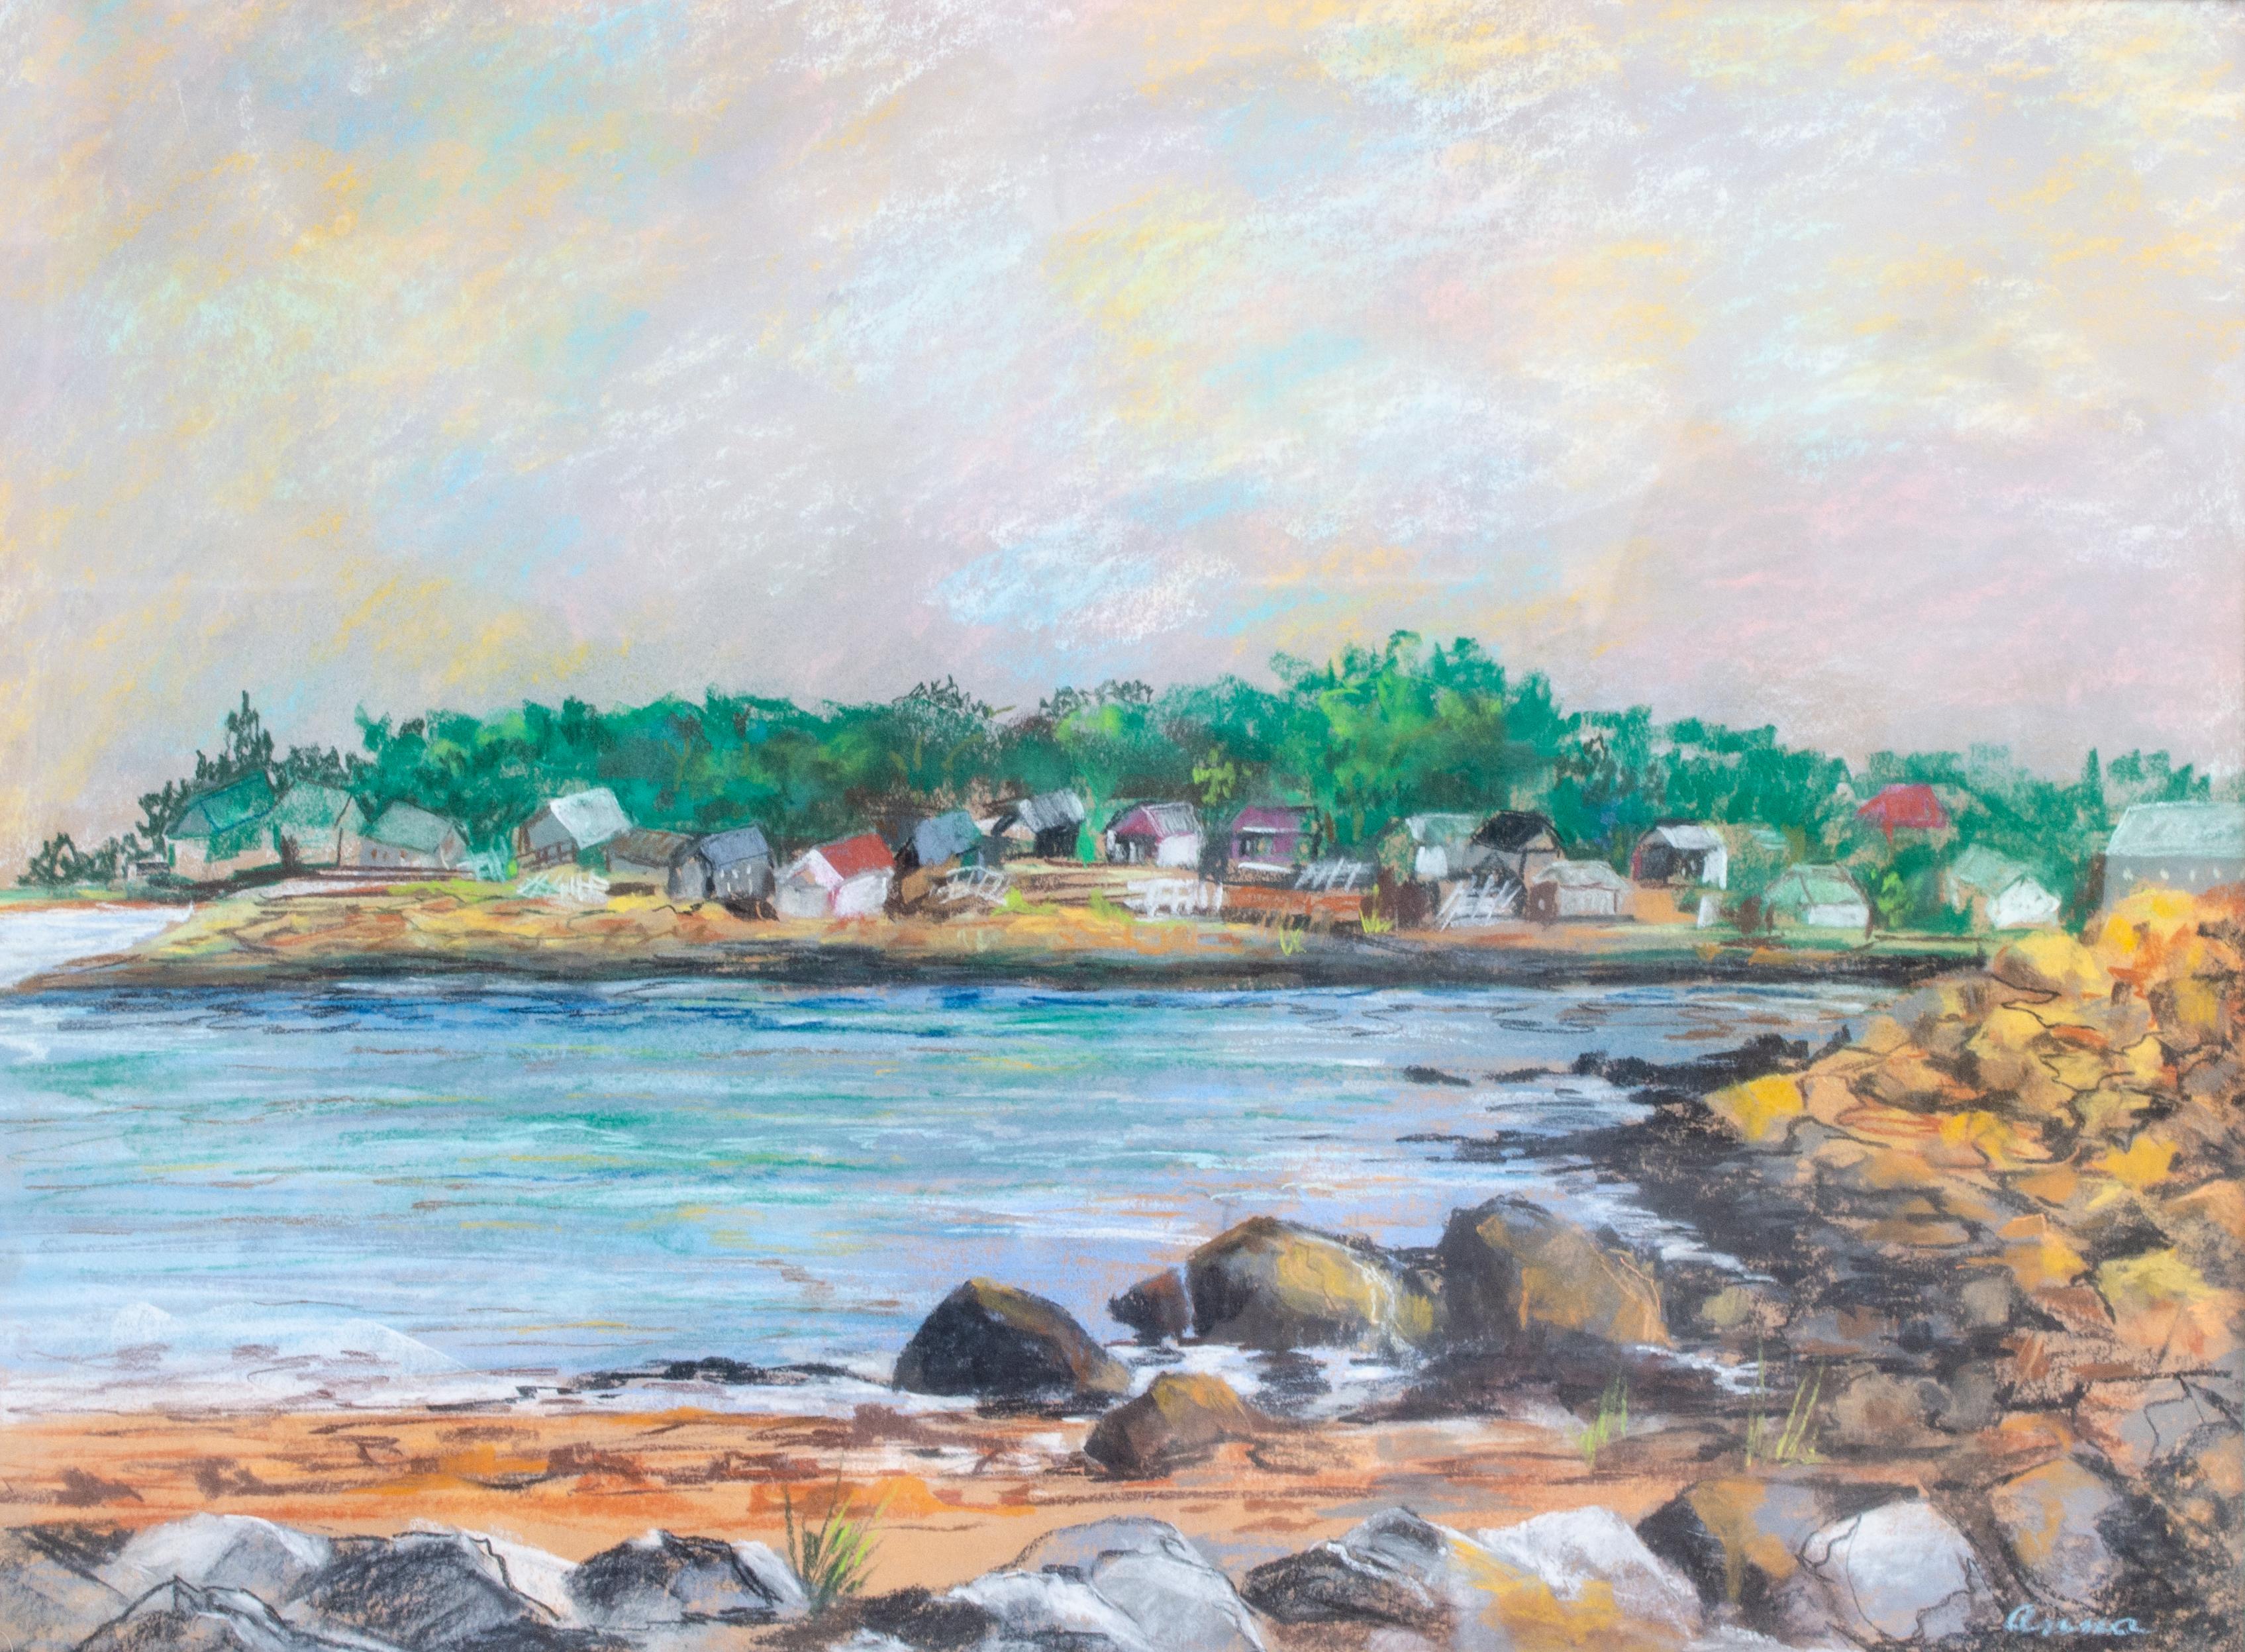 Unknown Landscape Art – Schöne impressionistische Küstenszene von New York in Pastell